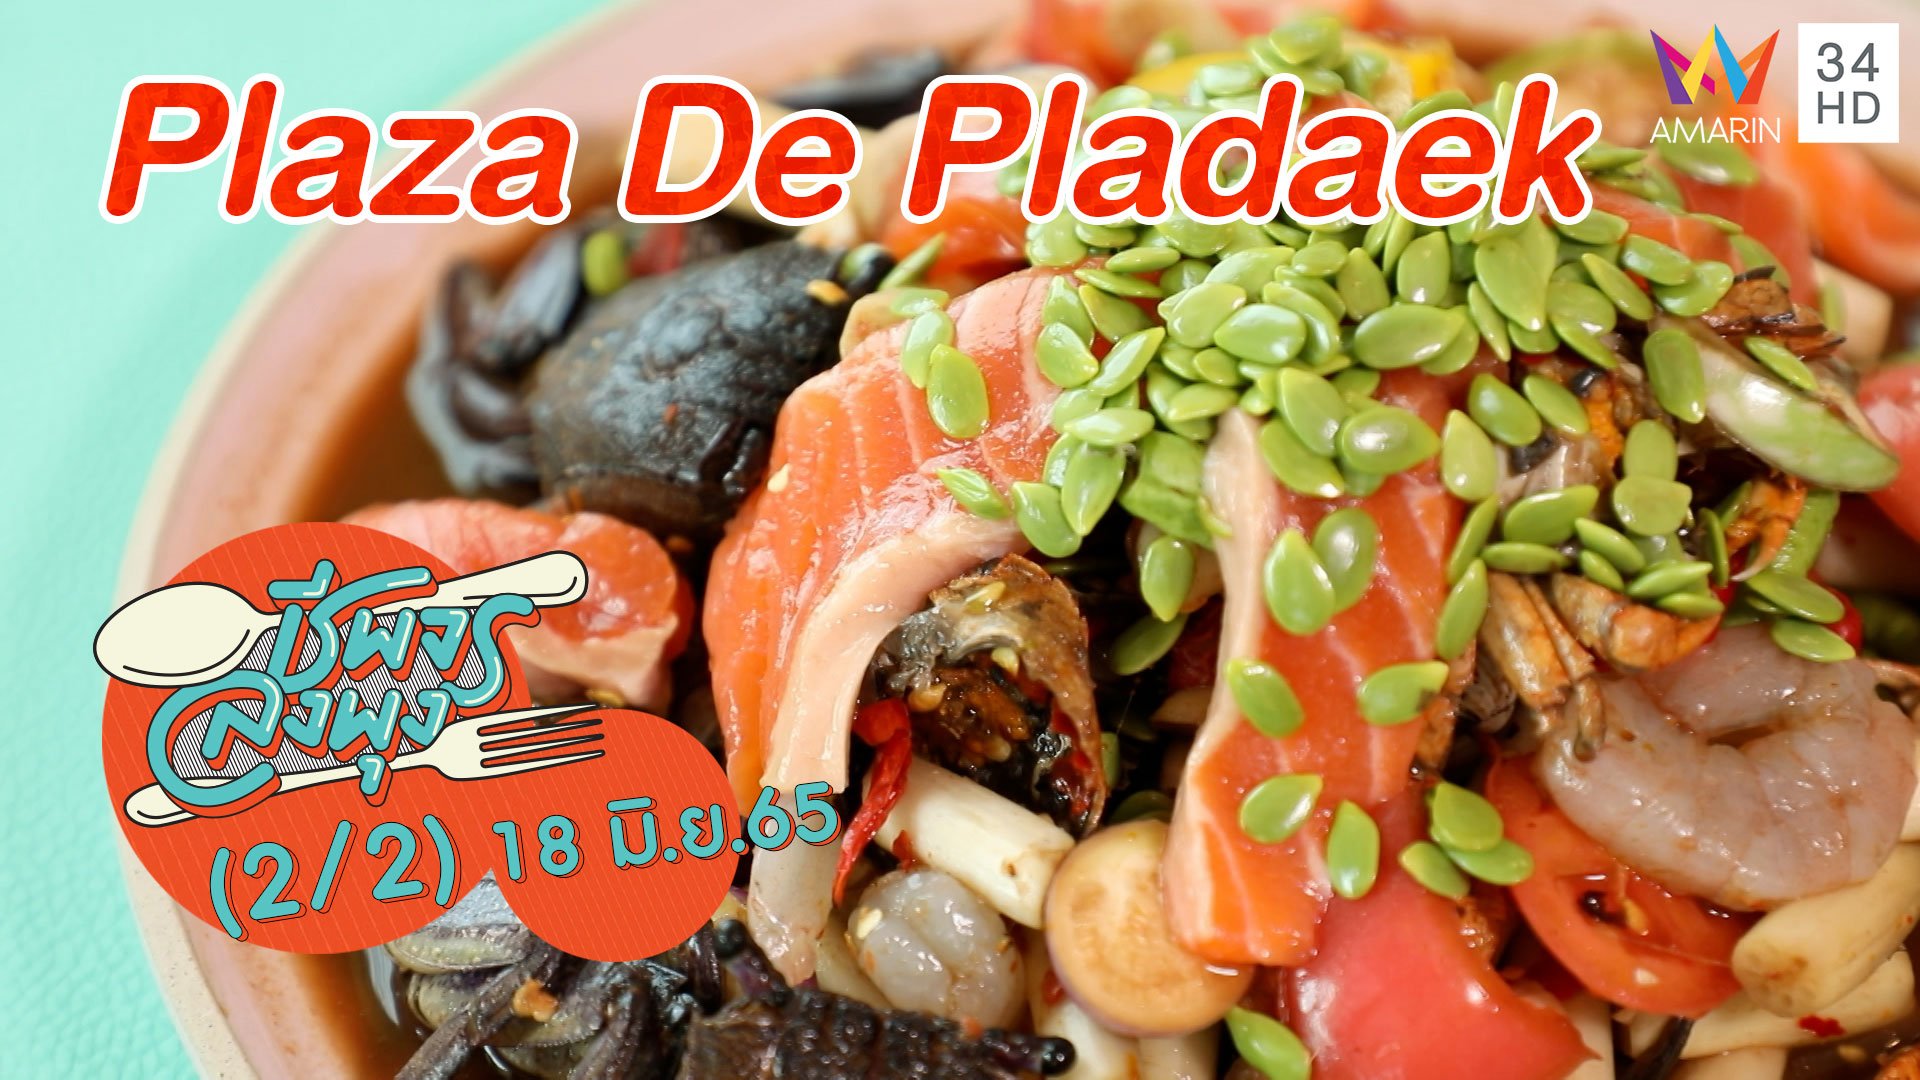 อาหารอีสานสไตล์คาเฟ่ @ Plaza De Pladaek | ชีพจรลงพุง | 18 มิ.ย. 65 (2/2) | AMARIN TVHD34